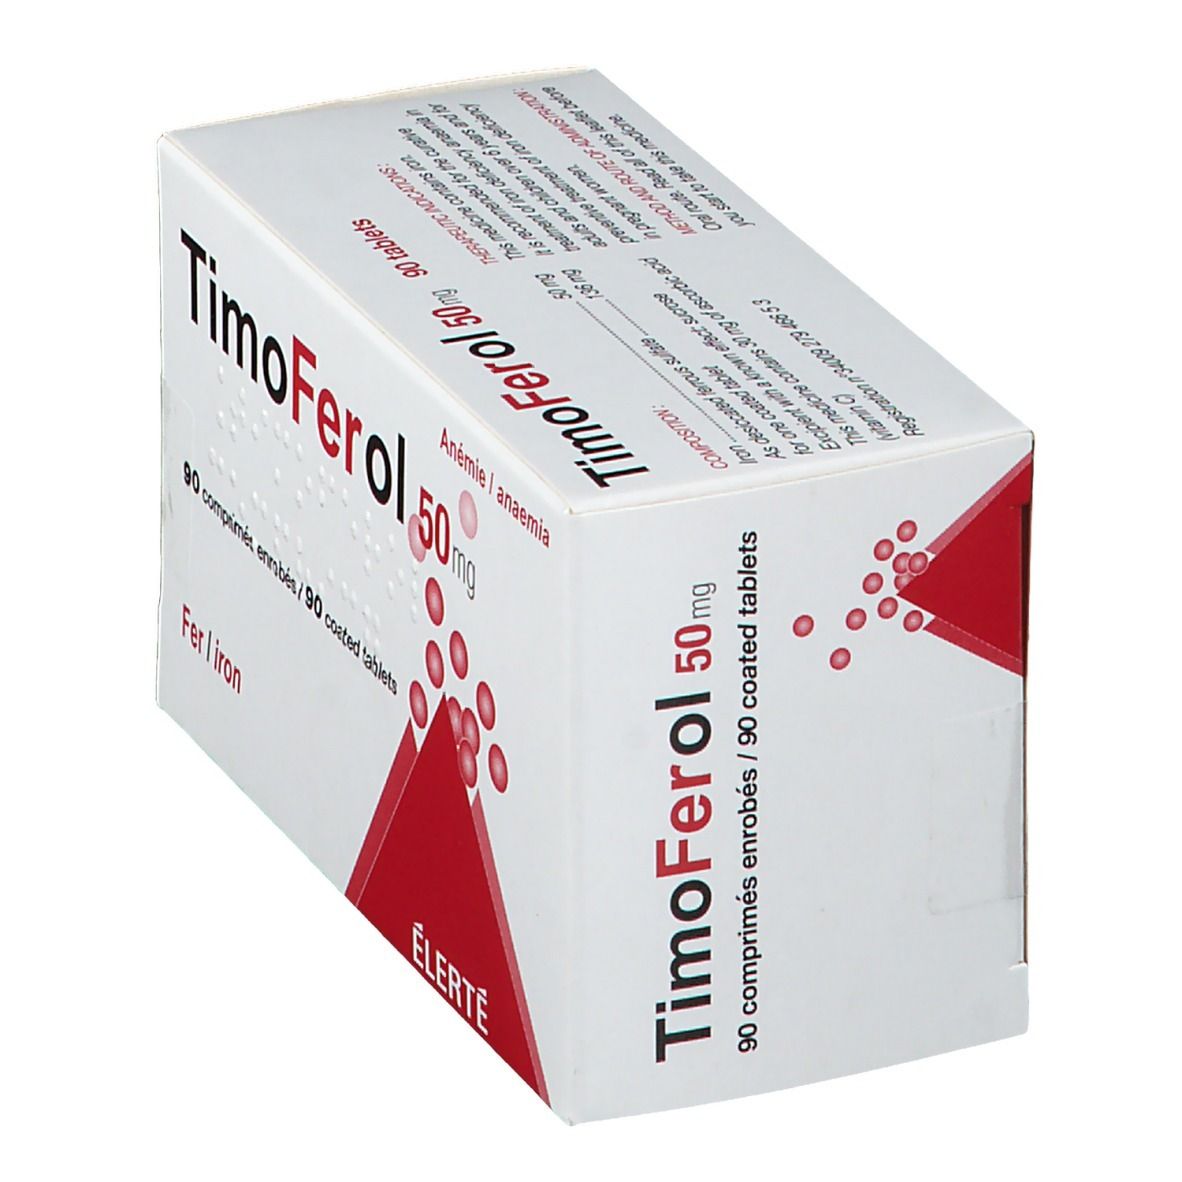 TimoFerol 50 mg